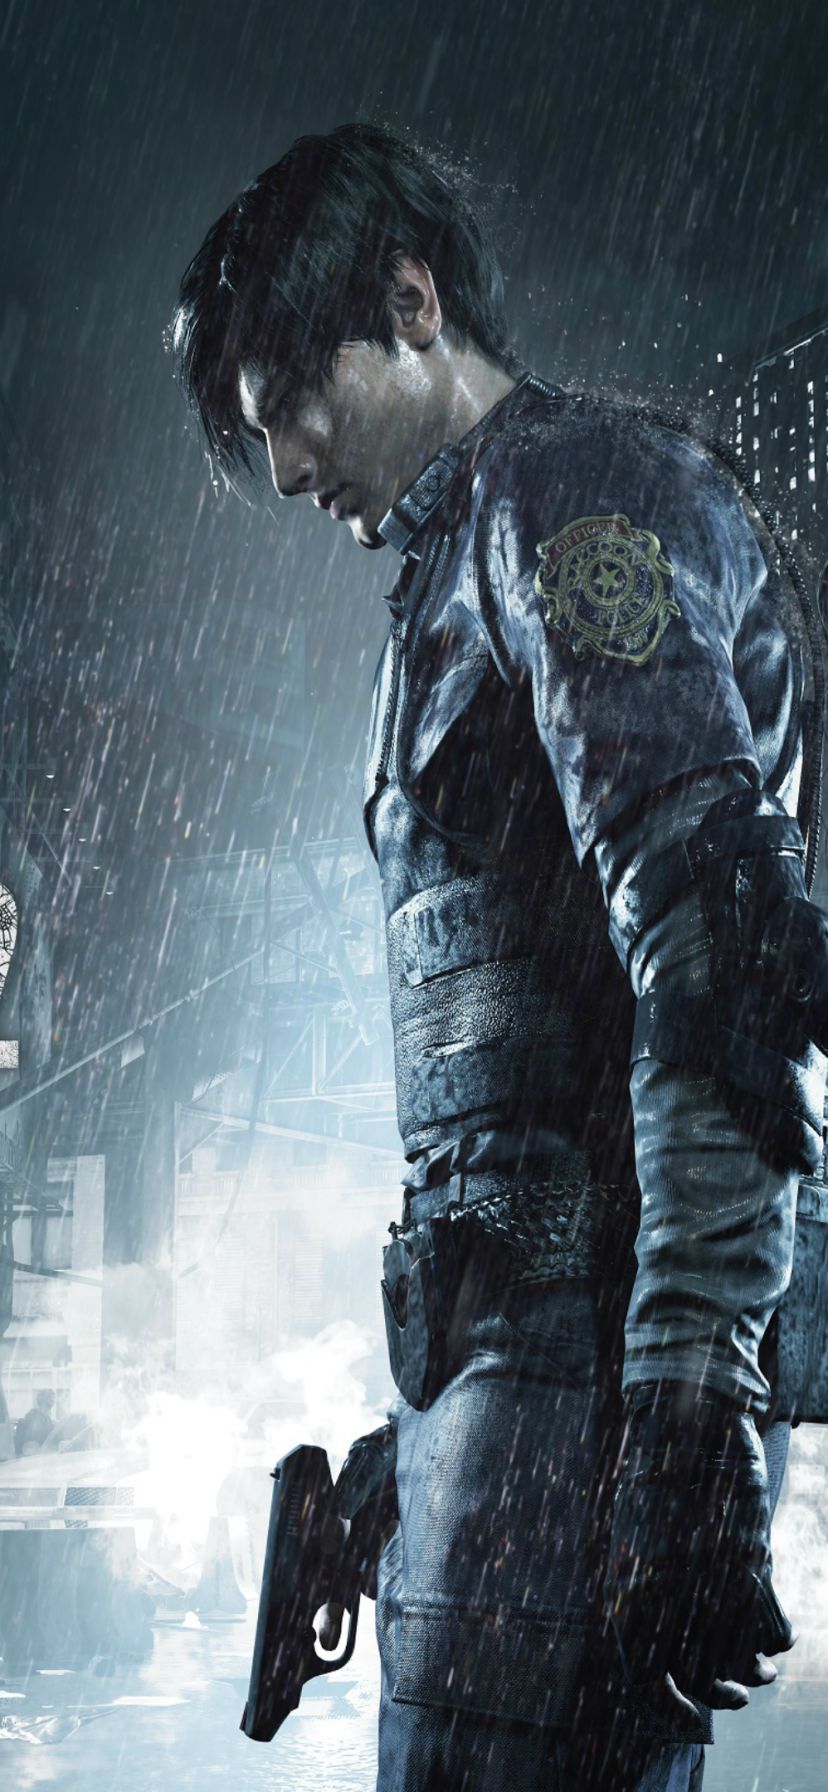 Download mobile wallpaper Resident Evil, Video Game, Leon S Kennedy, Resident Evil 2 (2019) for free.